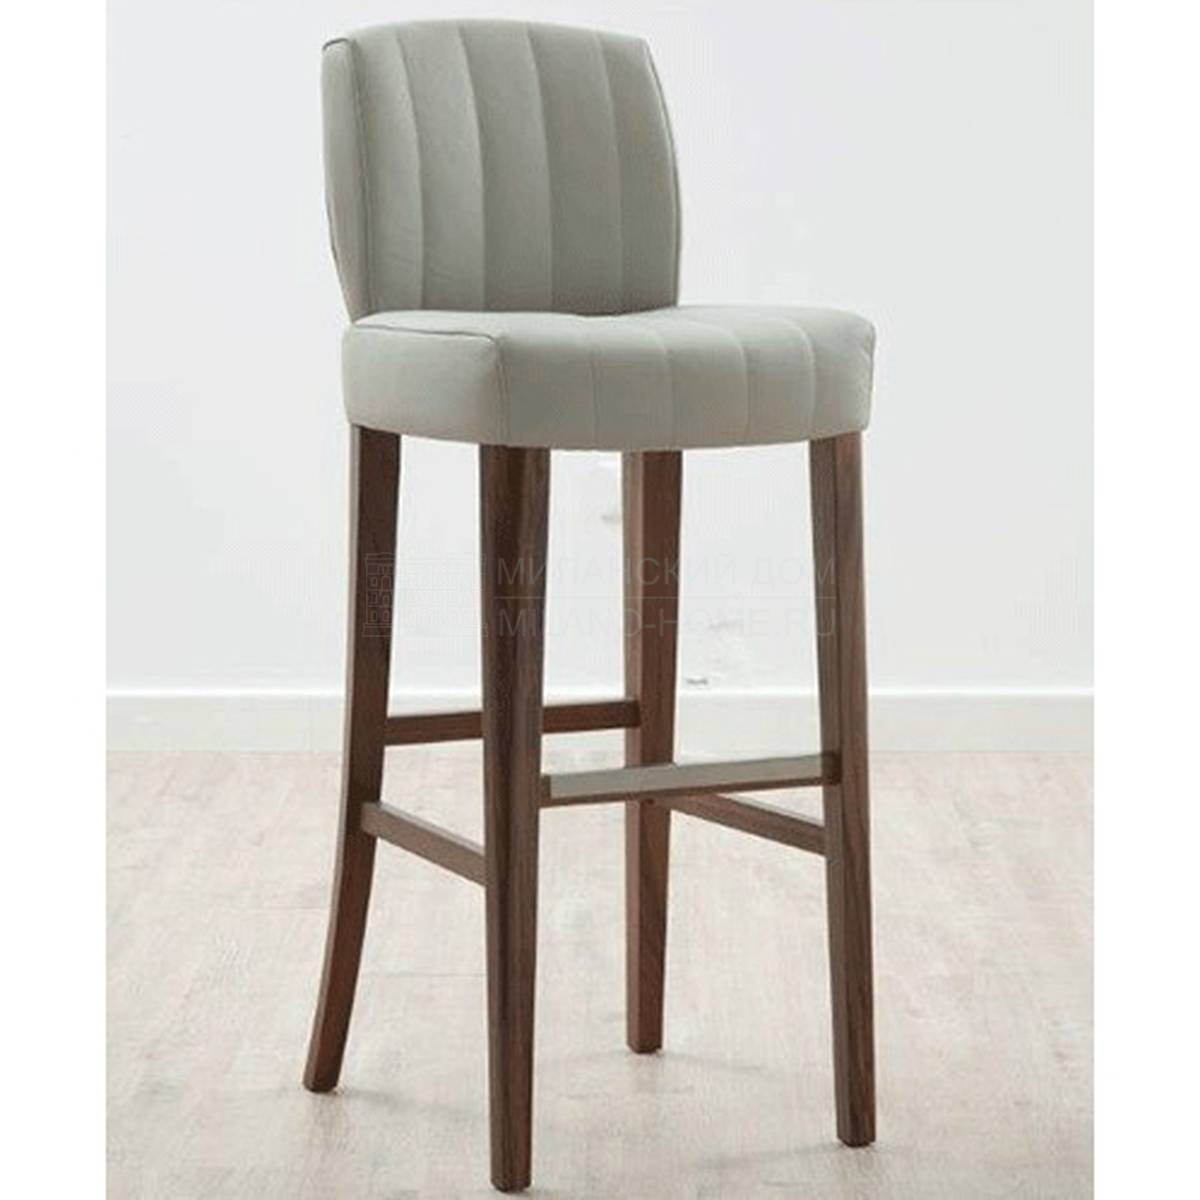 Барный стул Gallant bar stool из Италии фабрики TONON